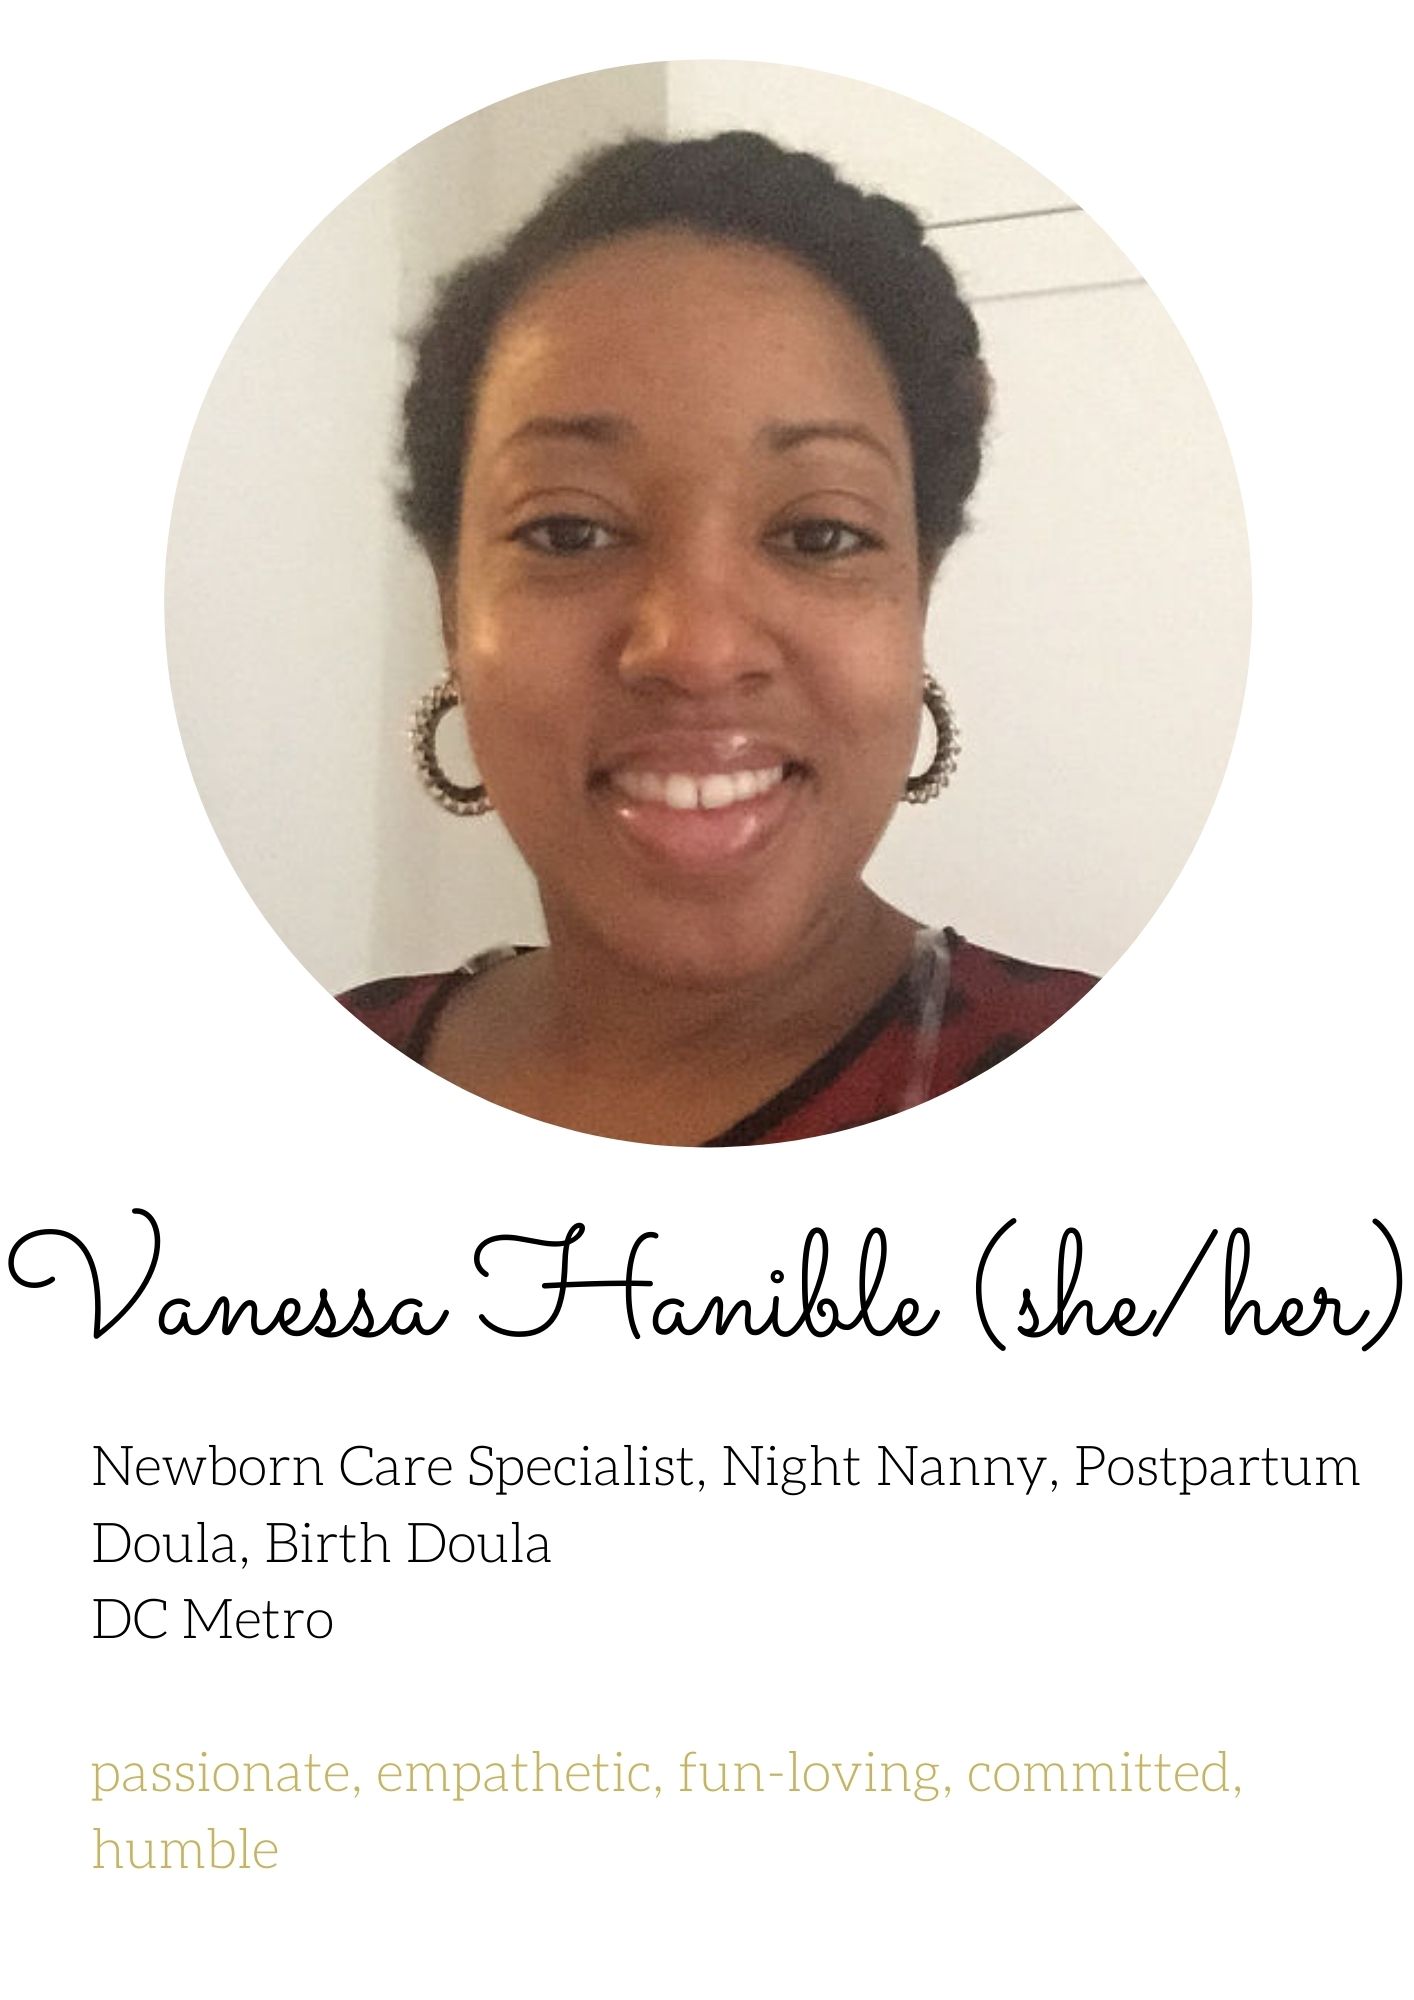 Vanessa Hanible Birth doula newborn care specialist lactation consultant